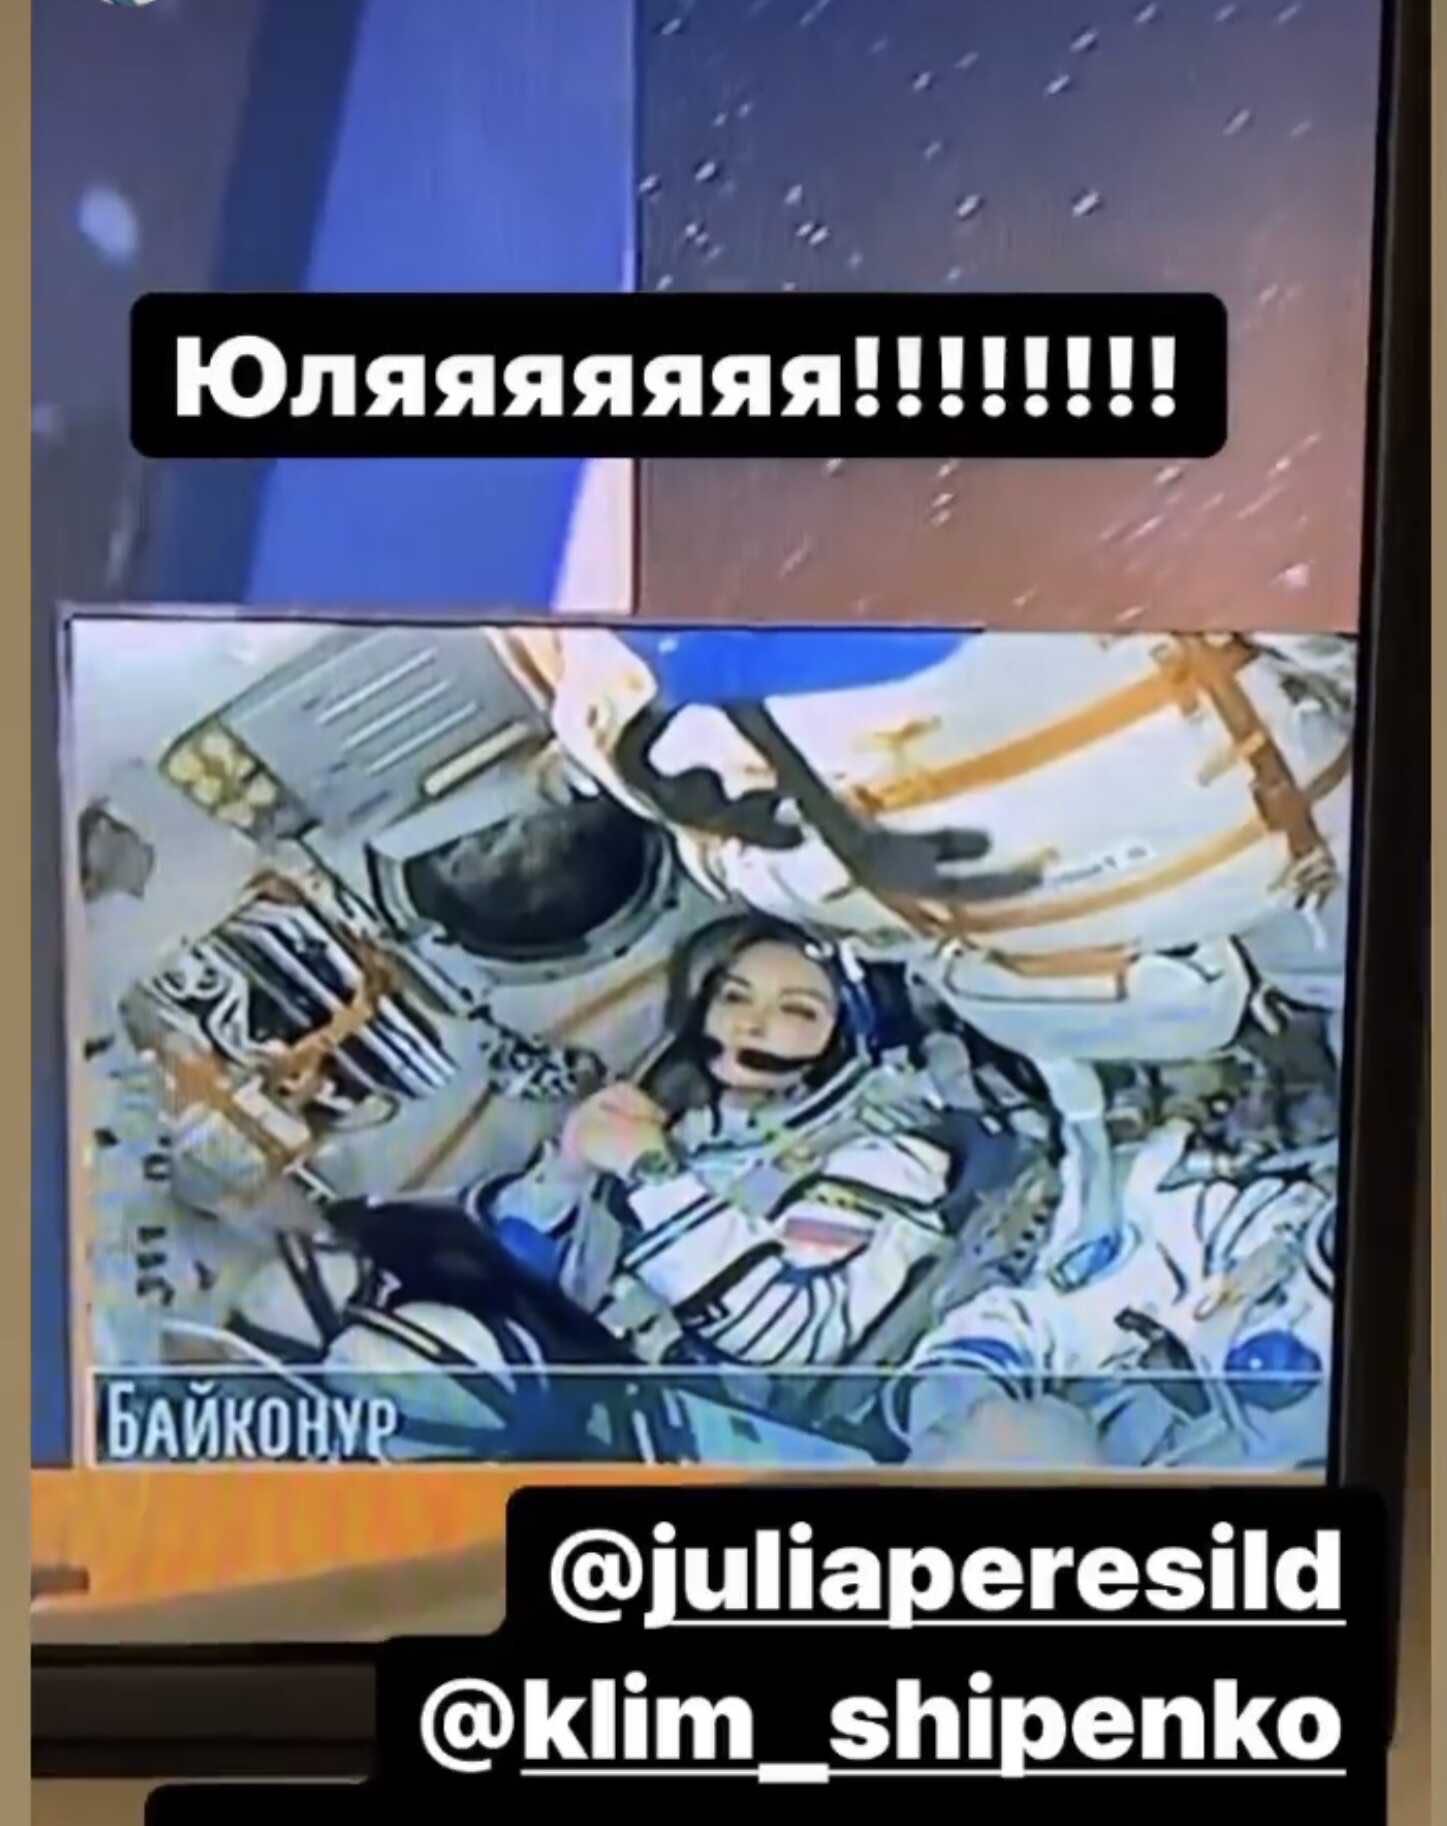 Юлия Пересильд и Клим Шипенко через несколько минут полетят в космос